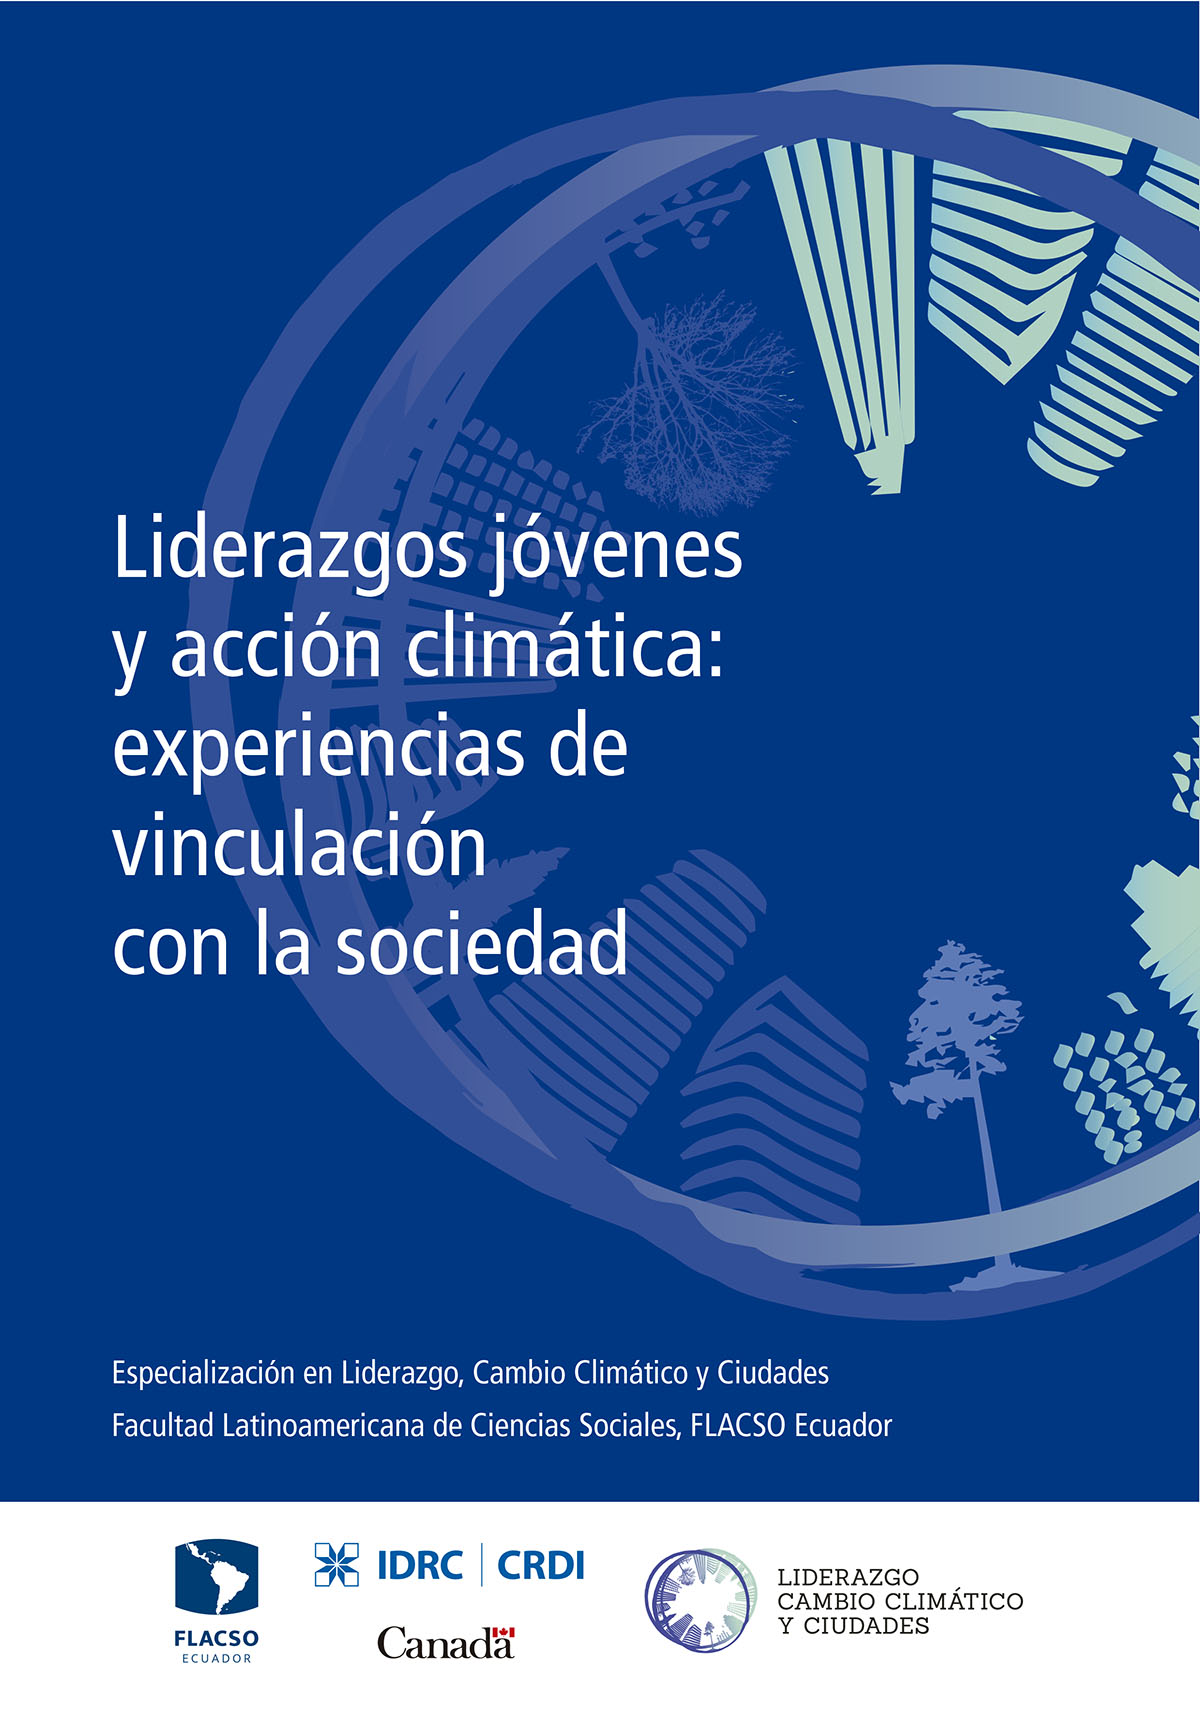 Durán S., Gustavo <br>Liderazgos jóvenes y acción climática: experiencias de vinculación con la sociedad<br/>Quito: FLACSO Ecuador : Centro Internacional de Investigación para el Desarrollo (IDRC) : Liderazgo, Cambio Climático y Ciudades. 2019. 42 páginas 